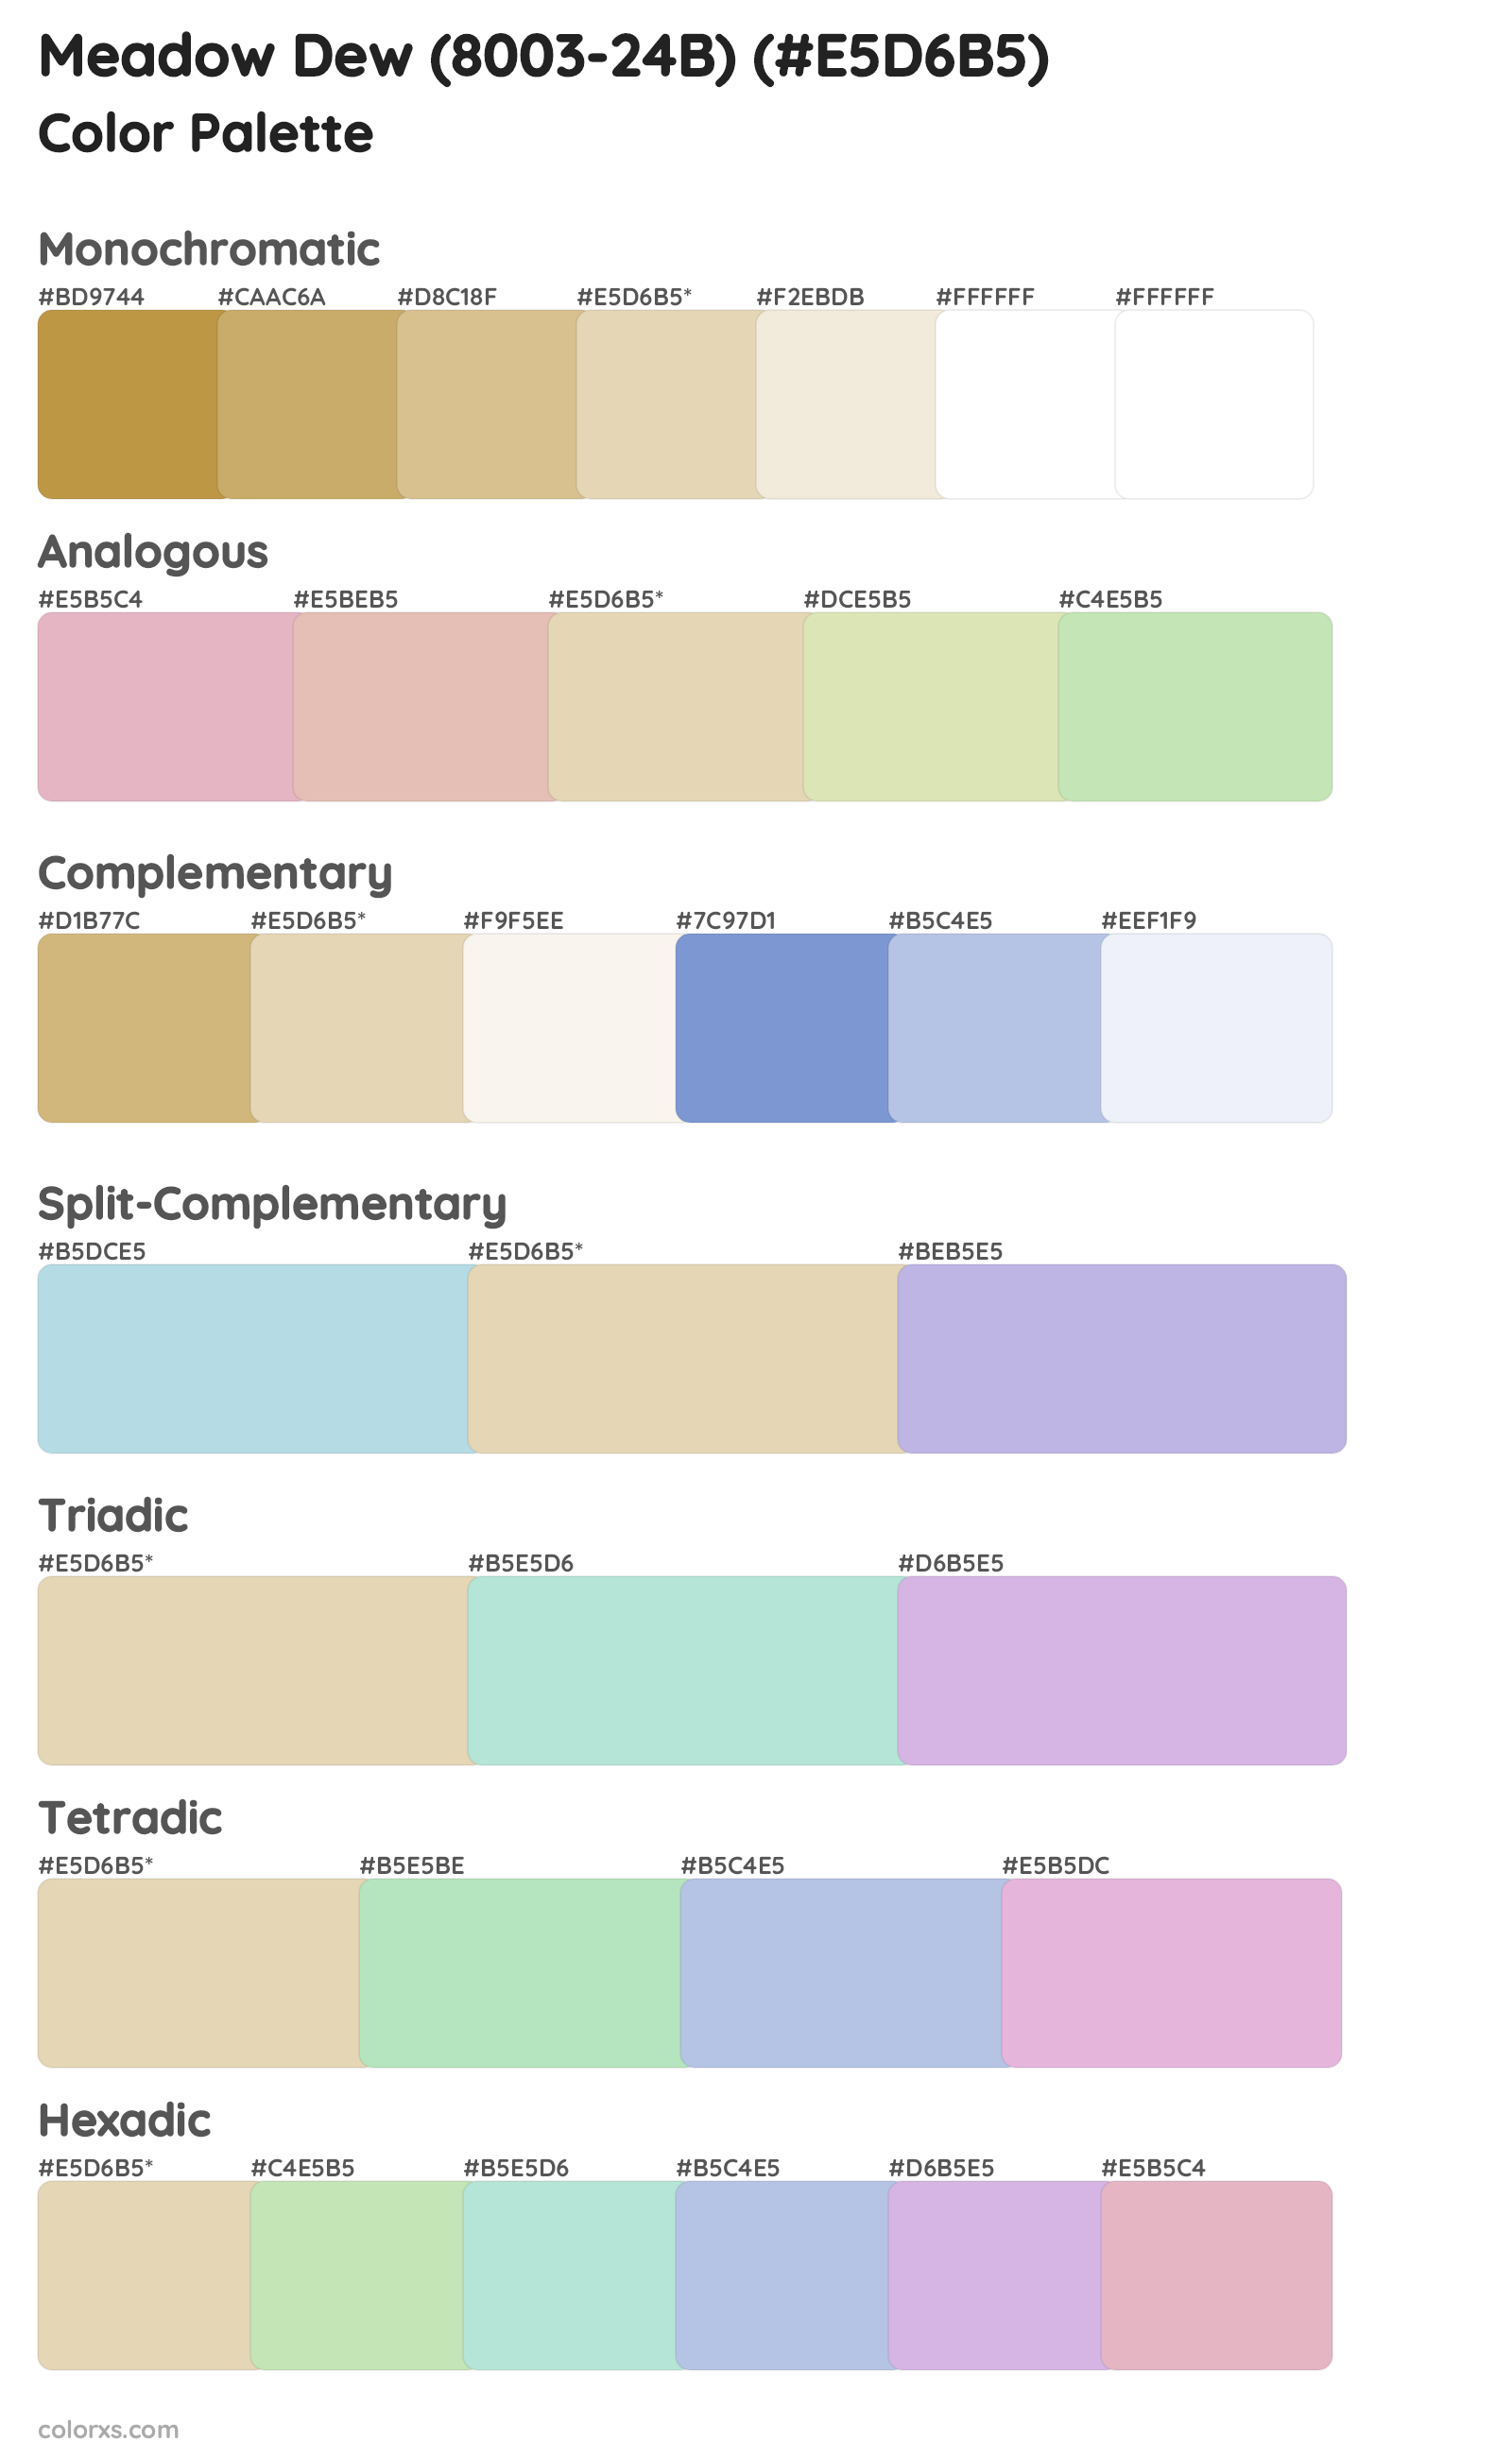 Meadow Dew (8003-24B) Color Scheme Palettes